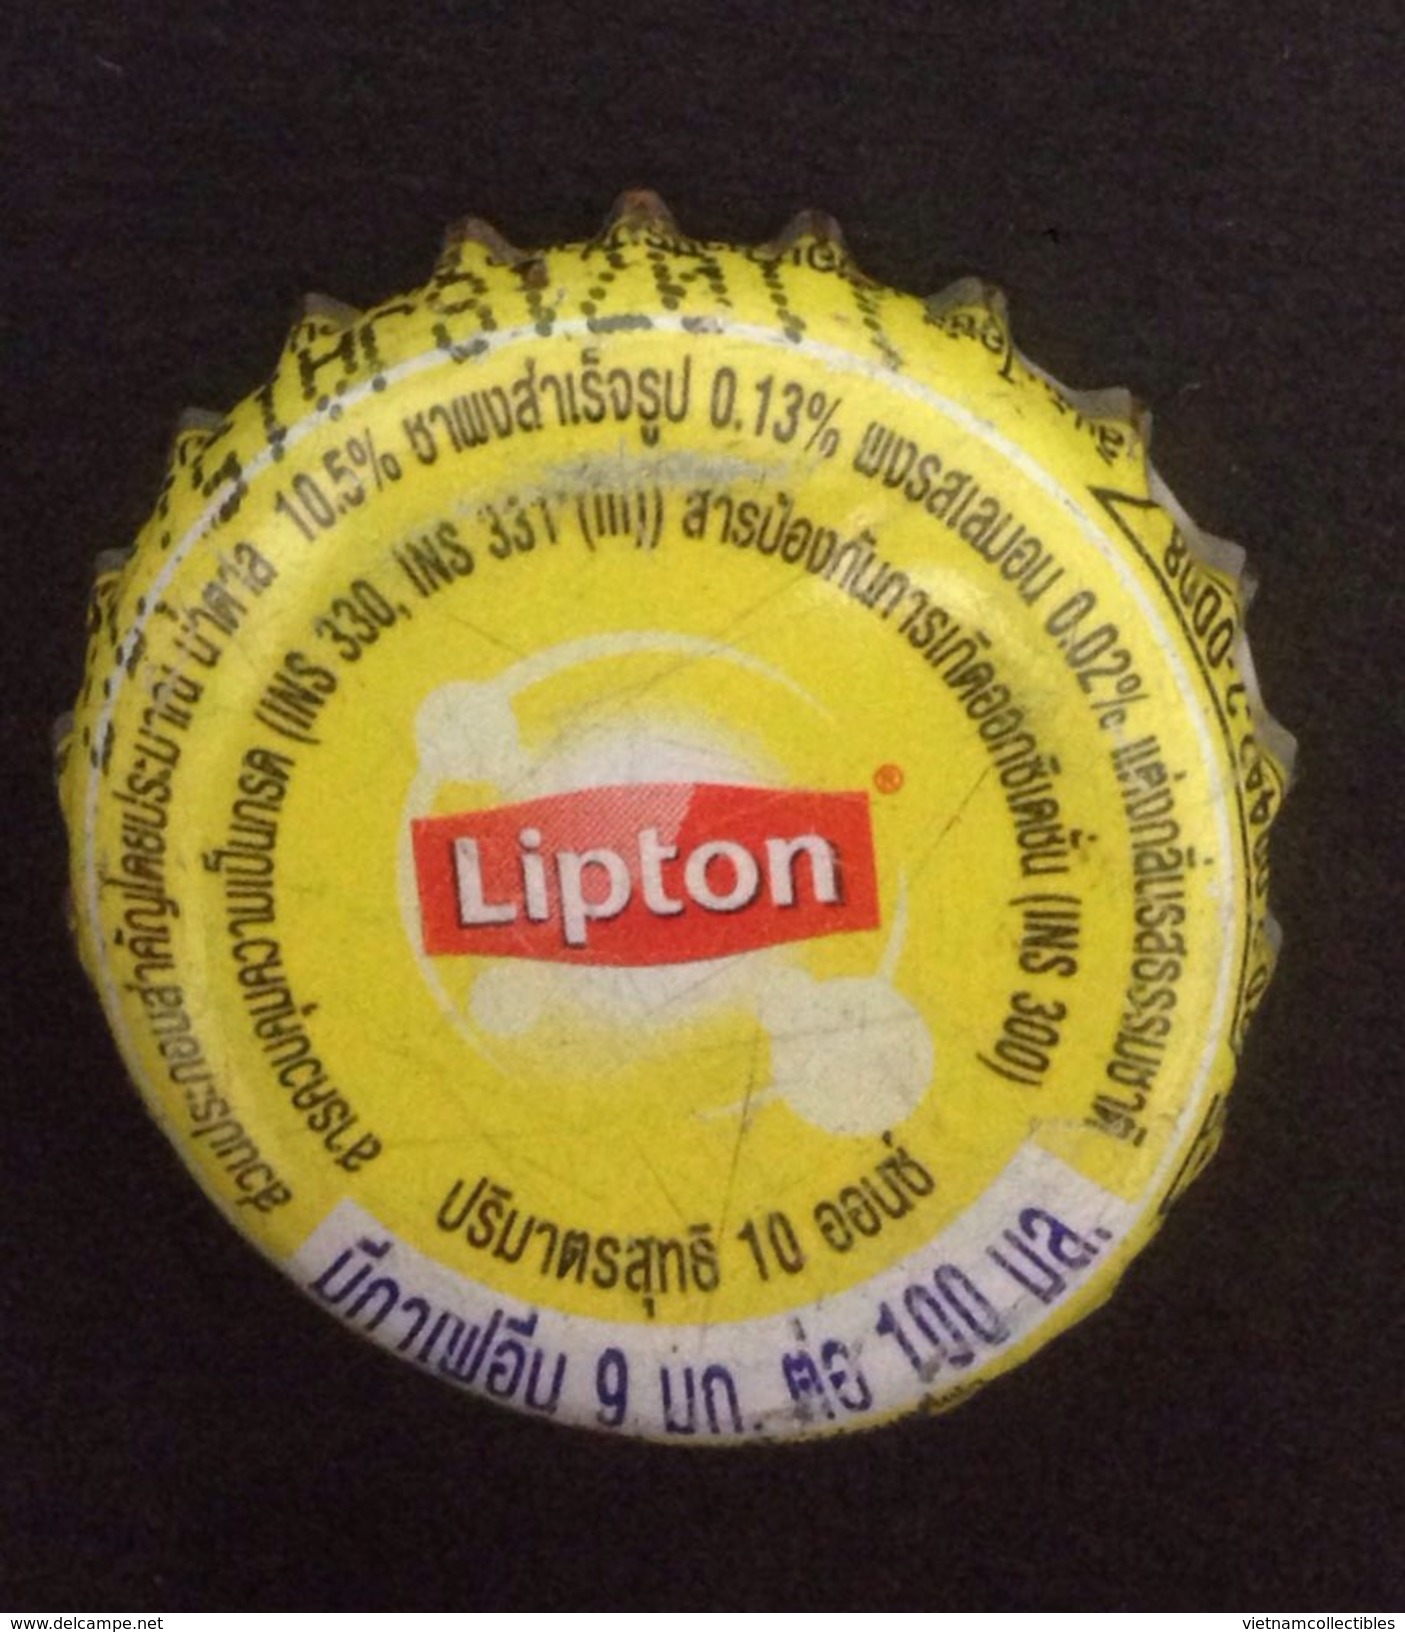 Capsules de thé Lipton